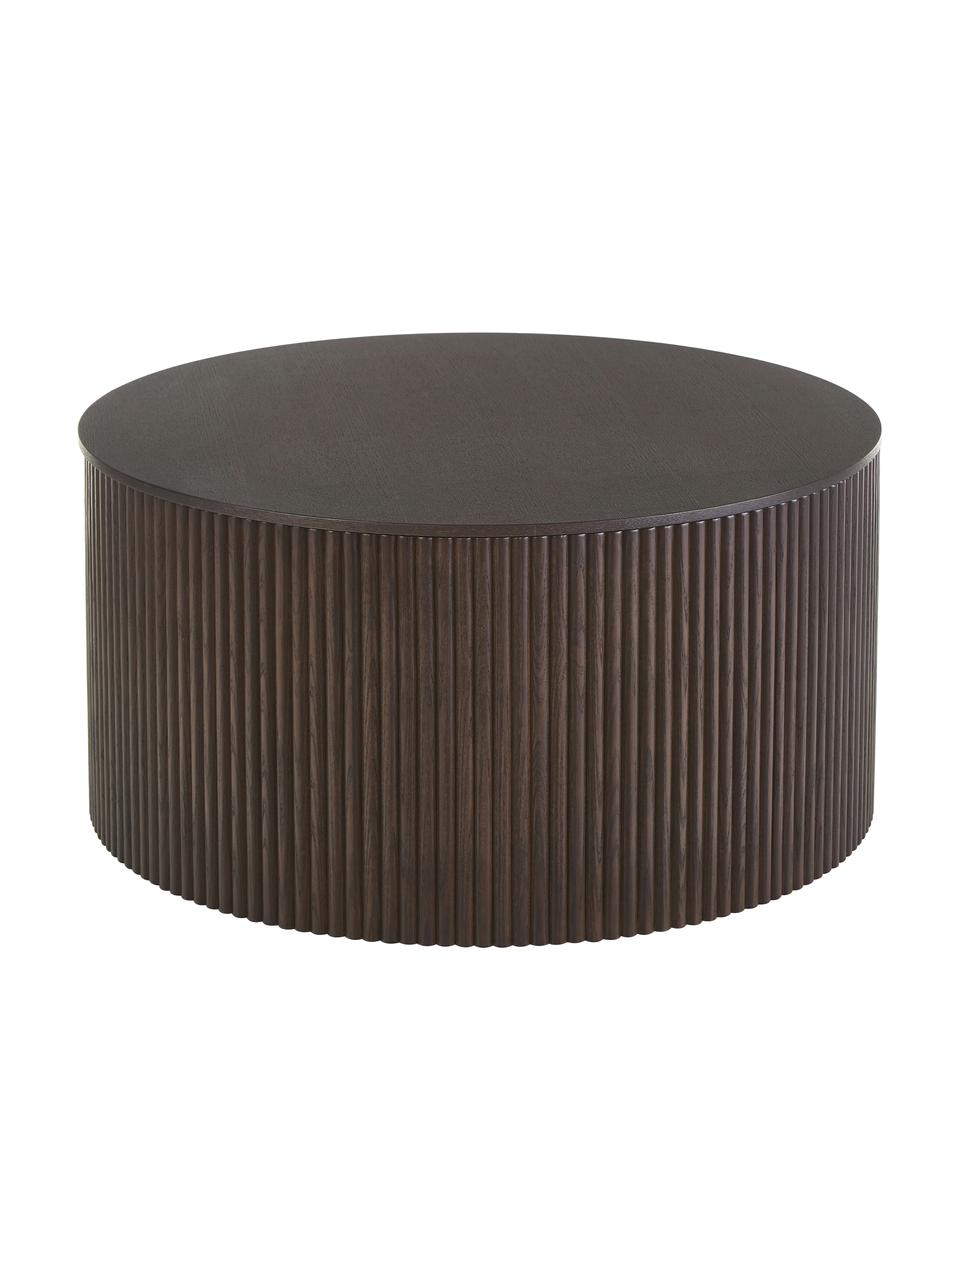 Mesa de centro redonda de madera Nele, con espacio de almacenamiento, Tablero de fibras de densidad media (MDF) chapado en madera de fresno, Negro, Ø 70 cm